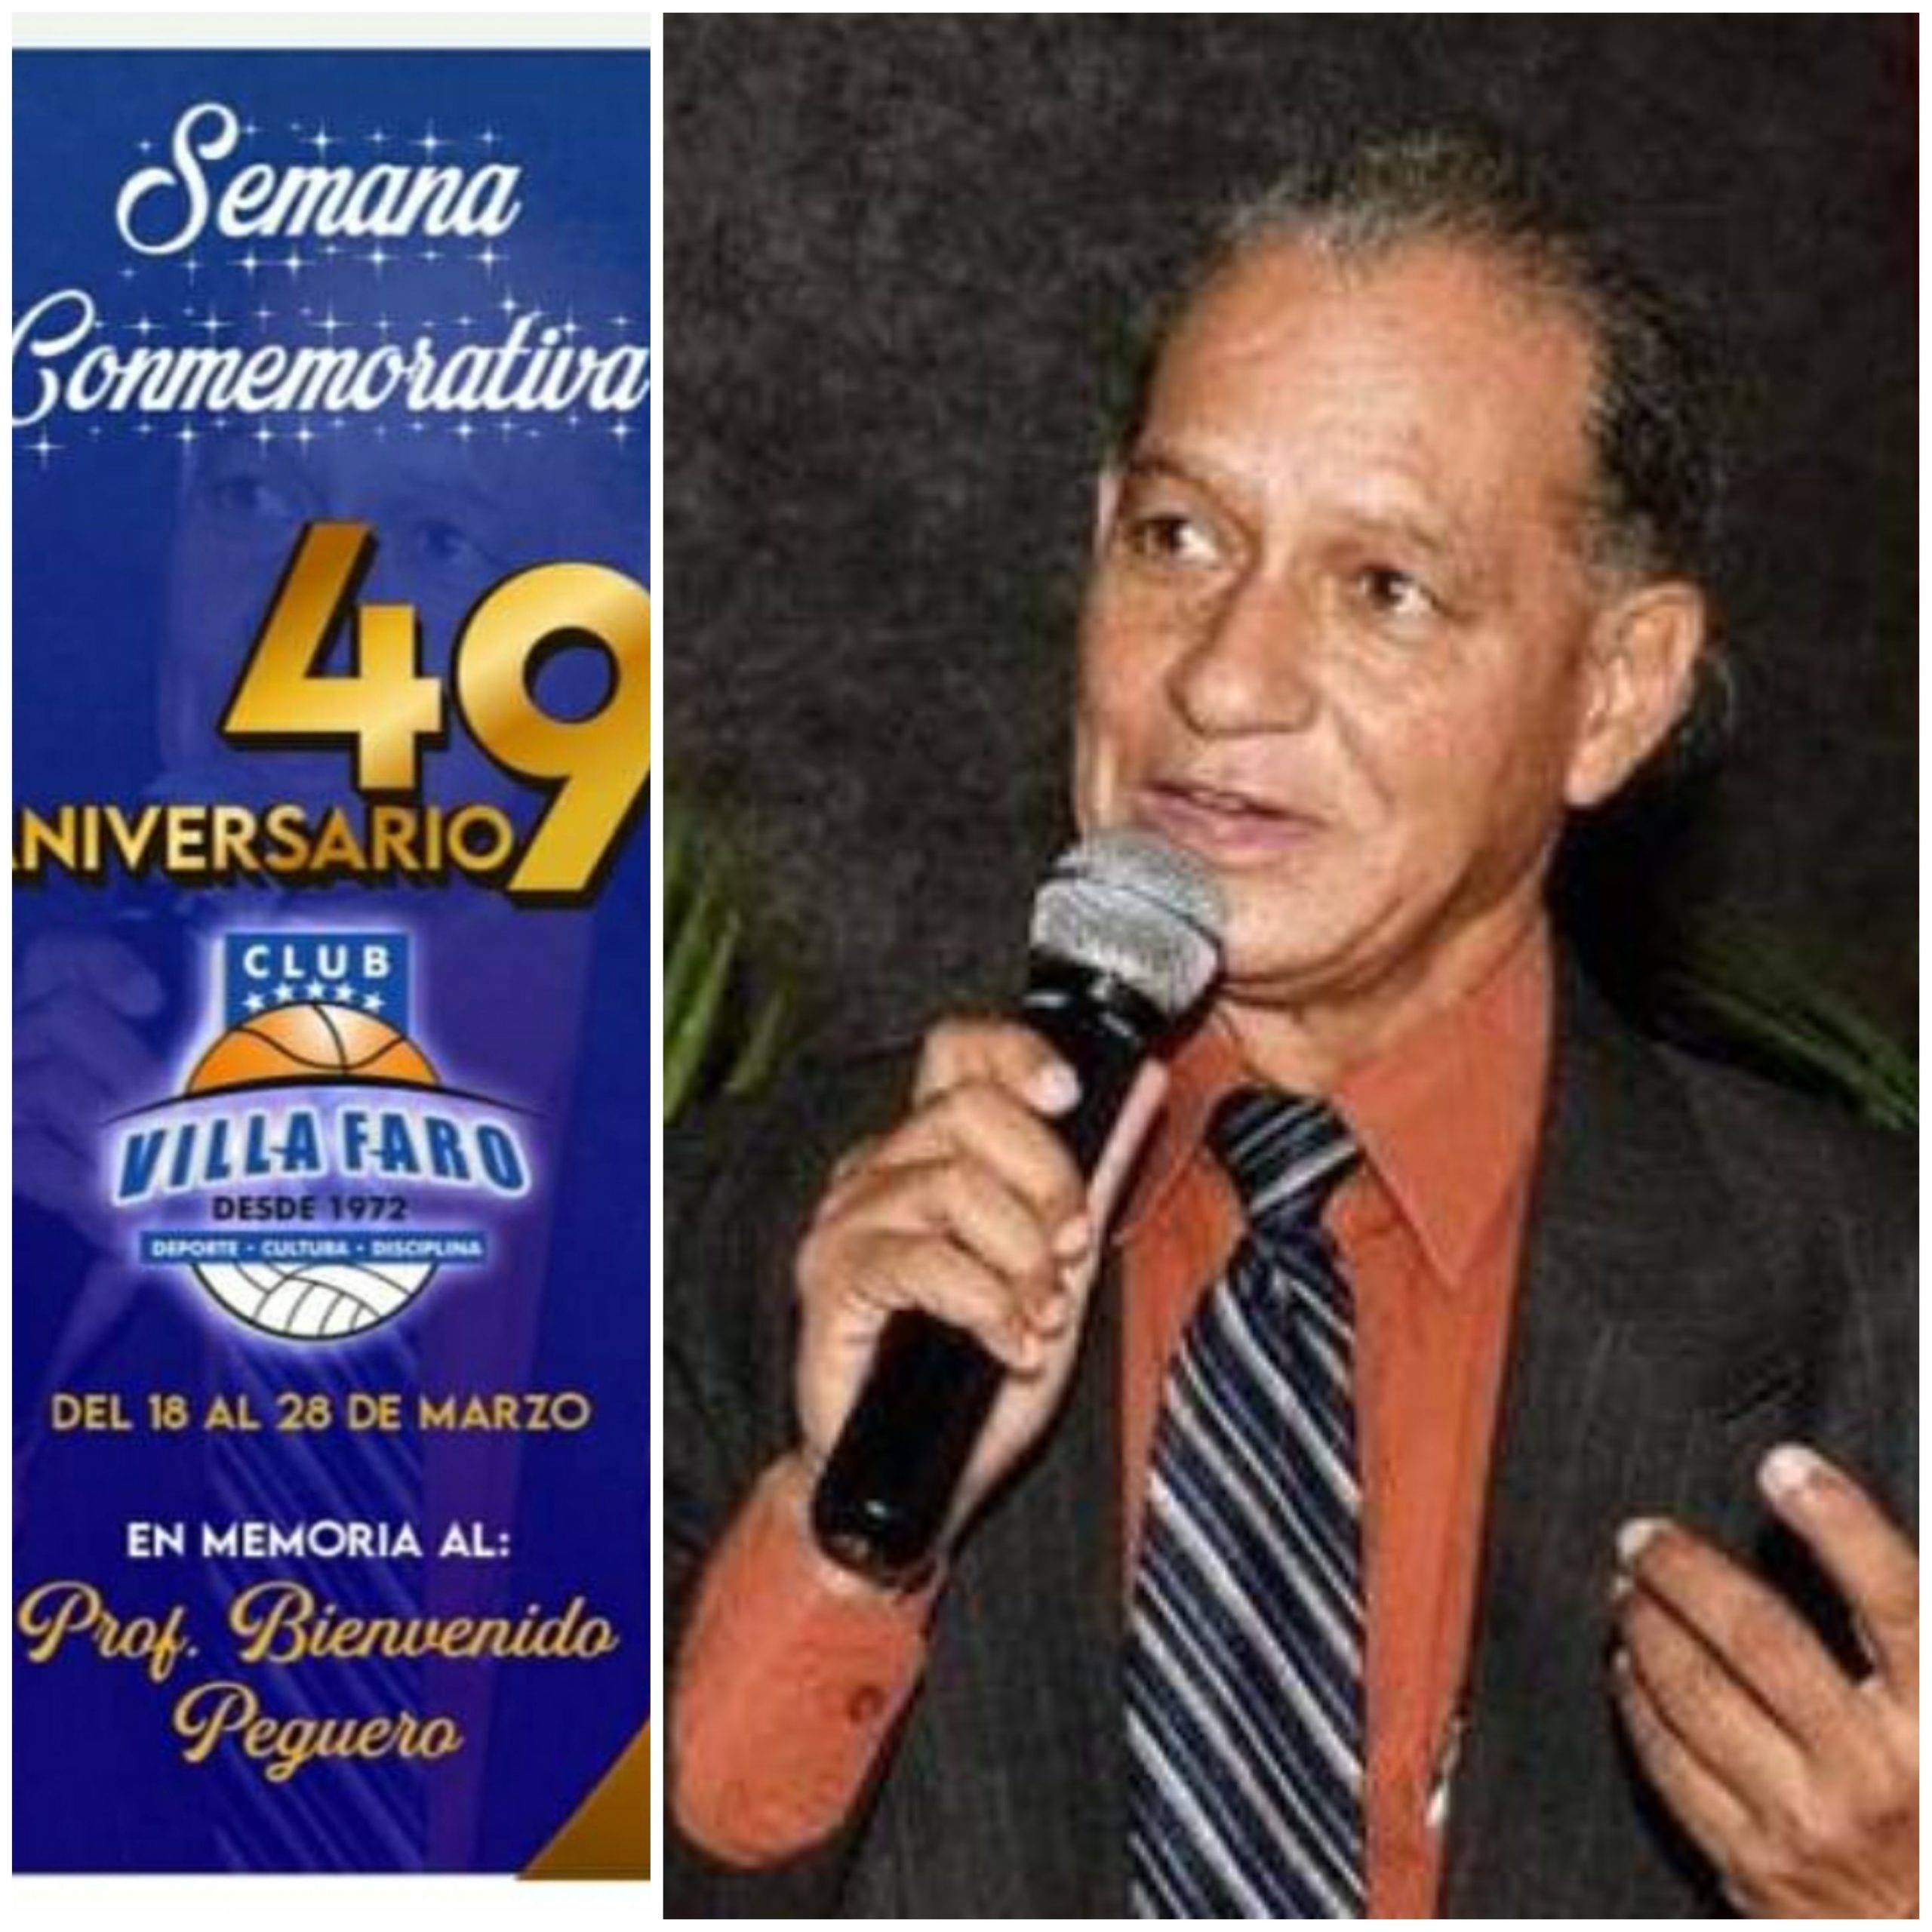 Semana aniversario Club Villa Faro, Profesor Peguero